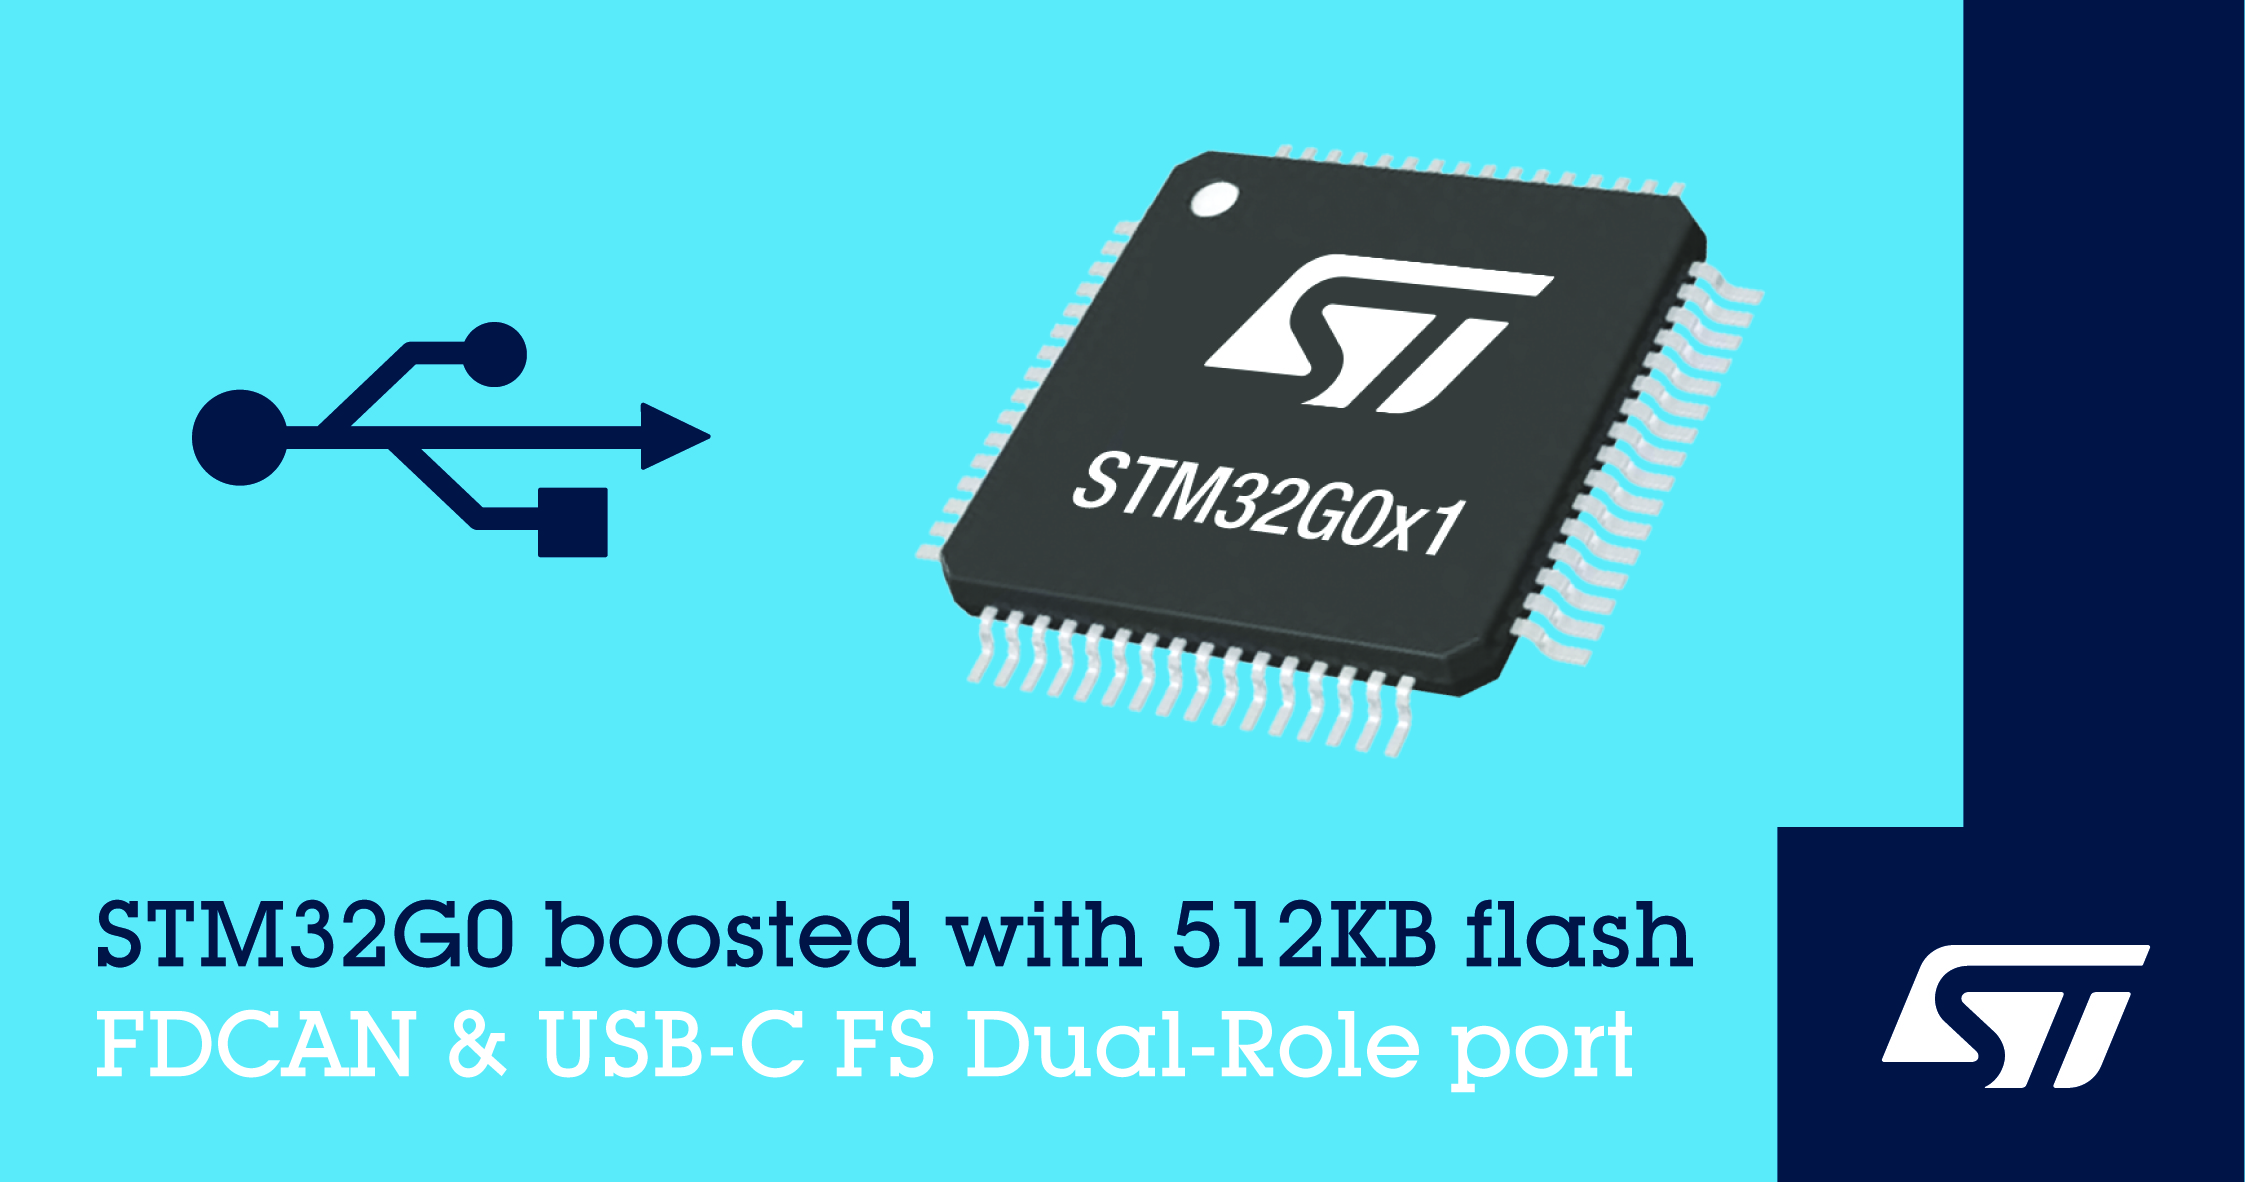 意法半导体发布新STM32G0微控制器，增加USB-C全速双模端口、CAN FD接口和更大容量的存储器